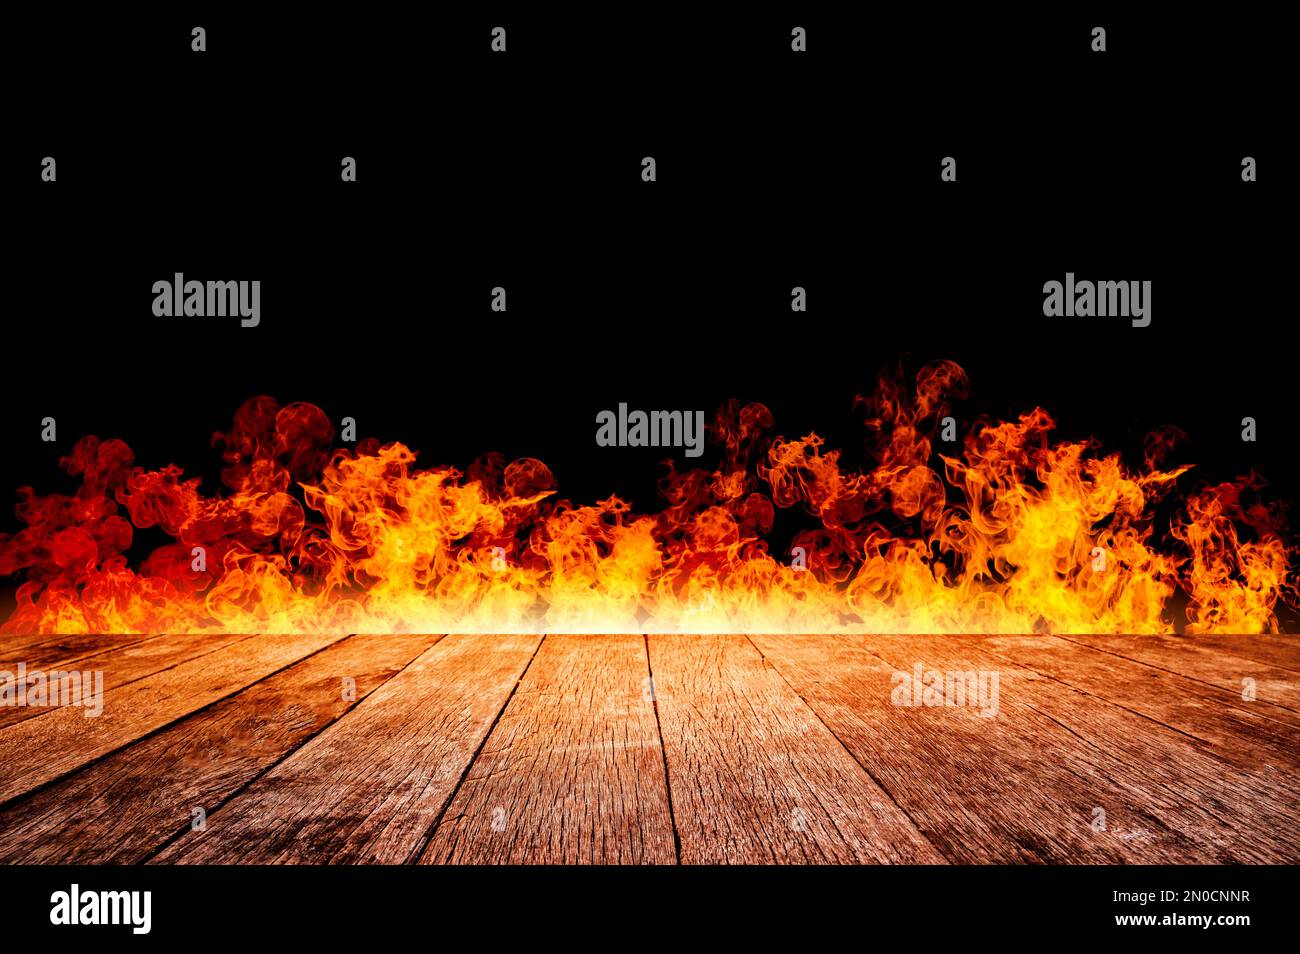 Afficher un espace libre à côté des flammes en feu Banque D'Images